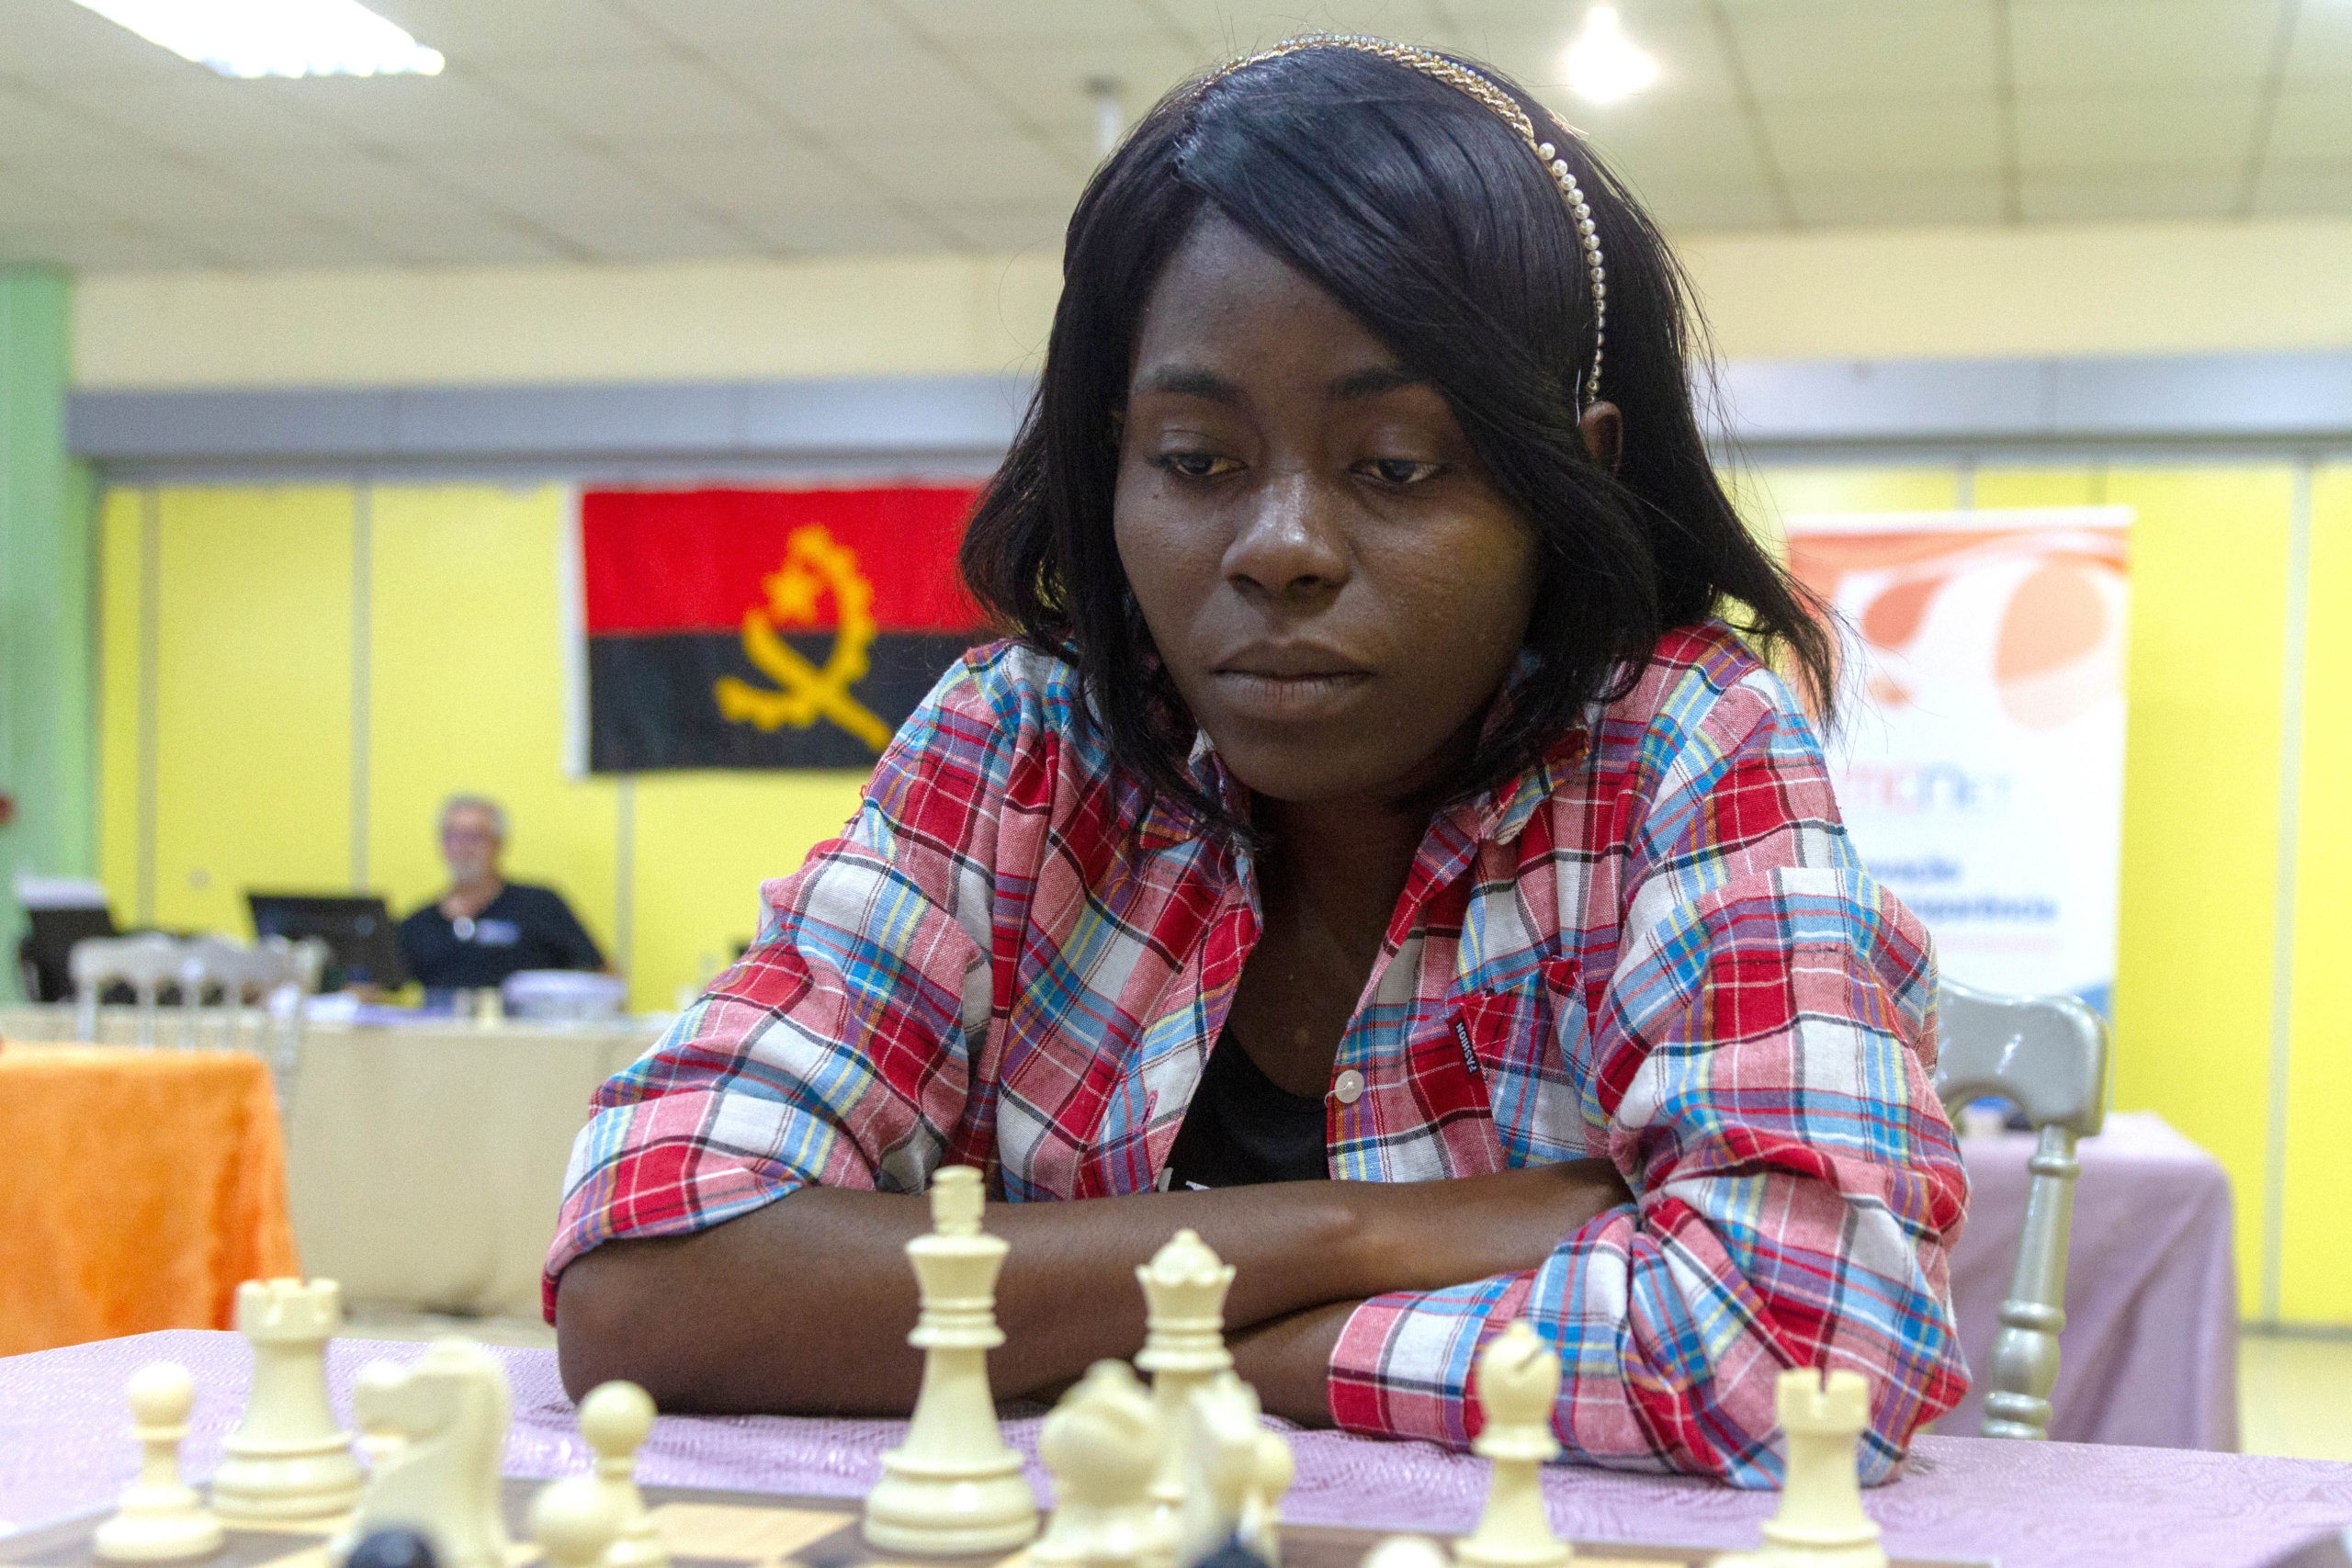 Angola qualifica-se para a segunda fase das Olimpíadas de xadrez